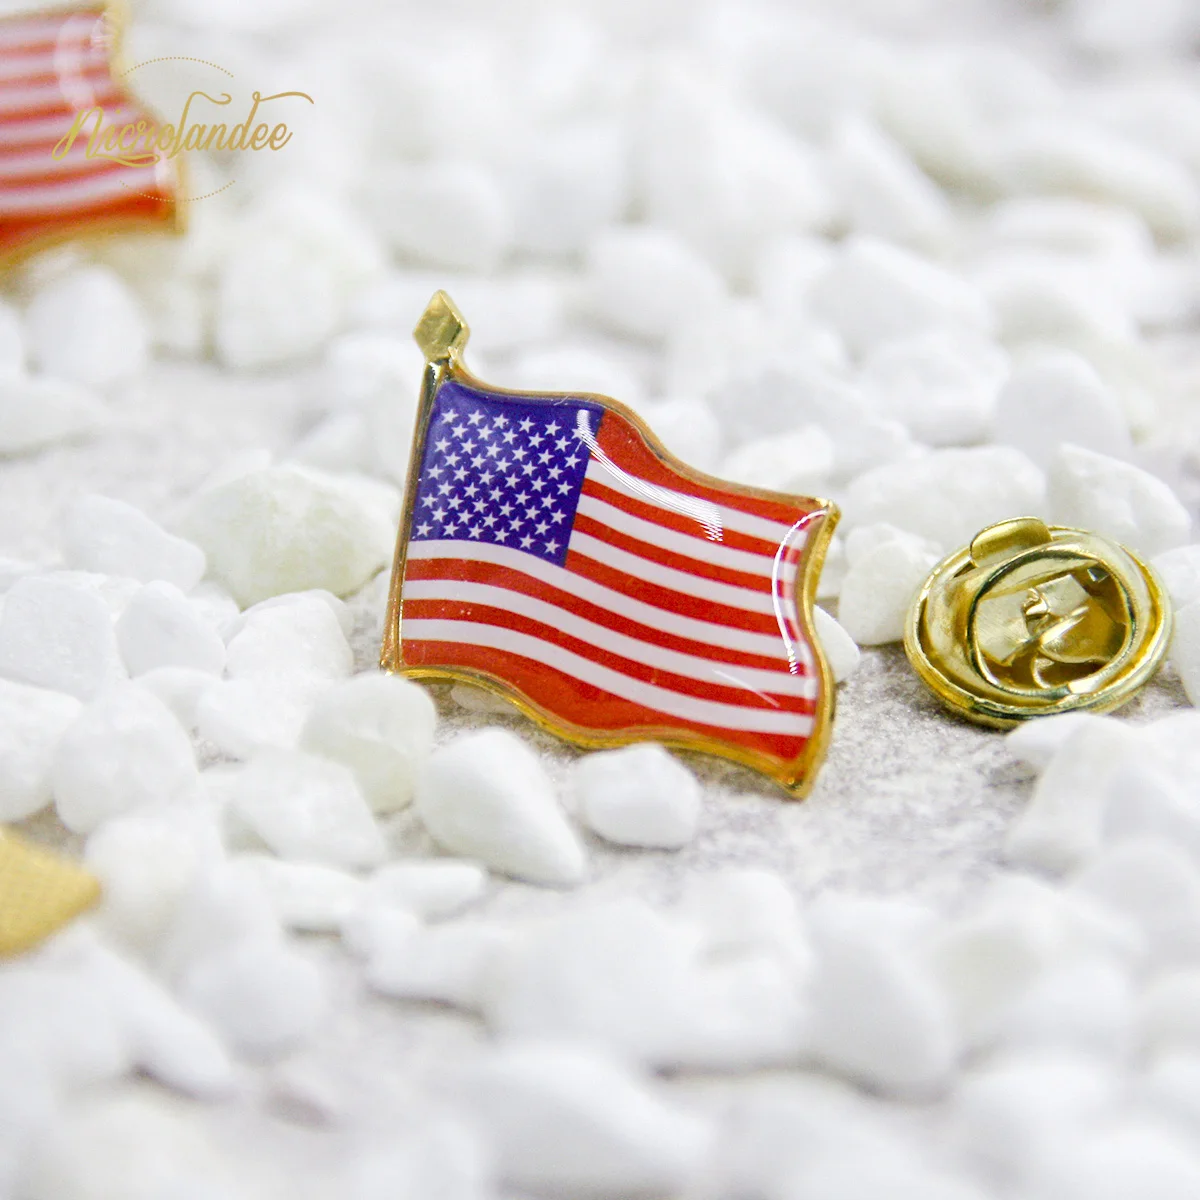 NICROLANDEE креативный Американский металлический значок с флагом национальный день США украшения дома Новые Вечерние DIY